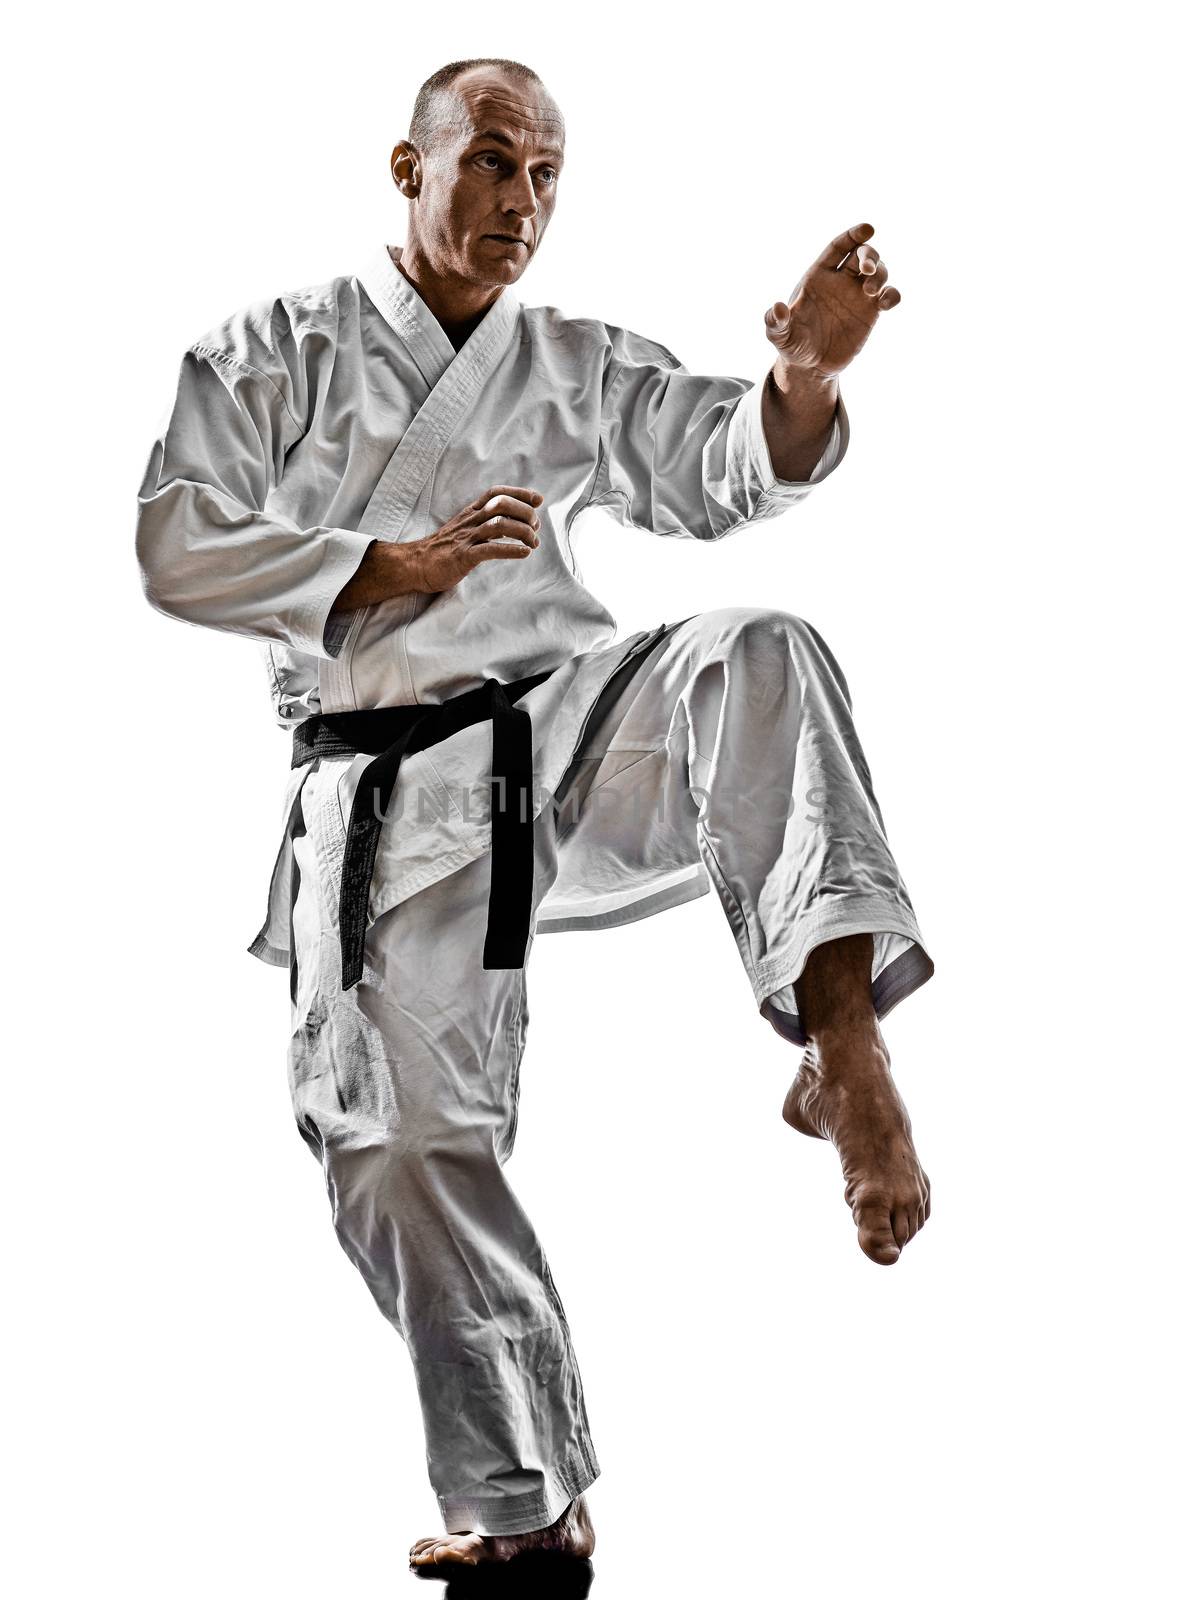 karate man by PIXSTILL